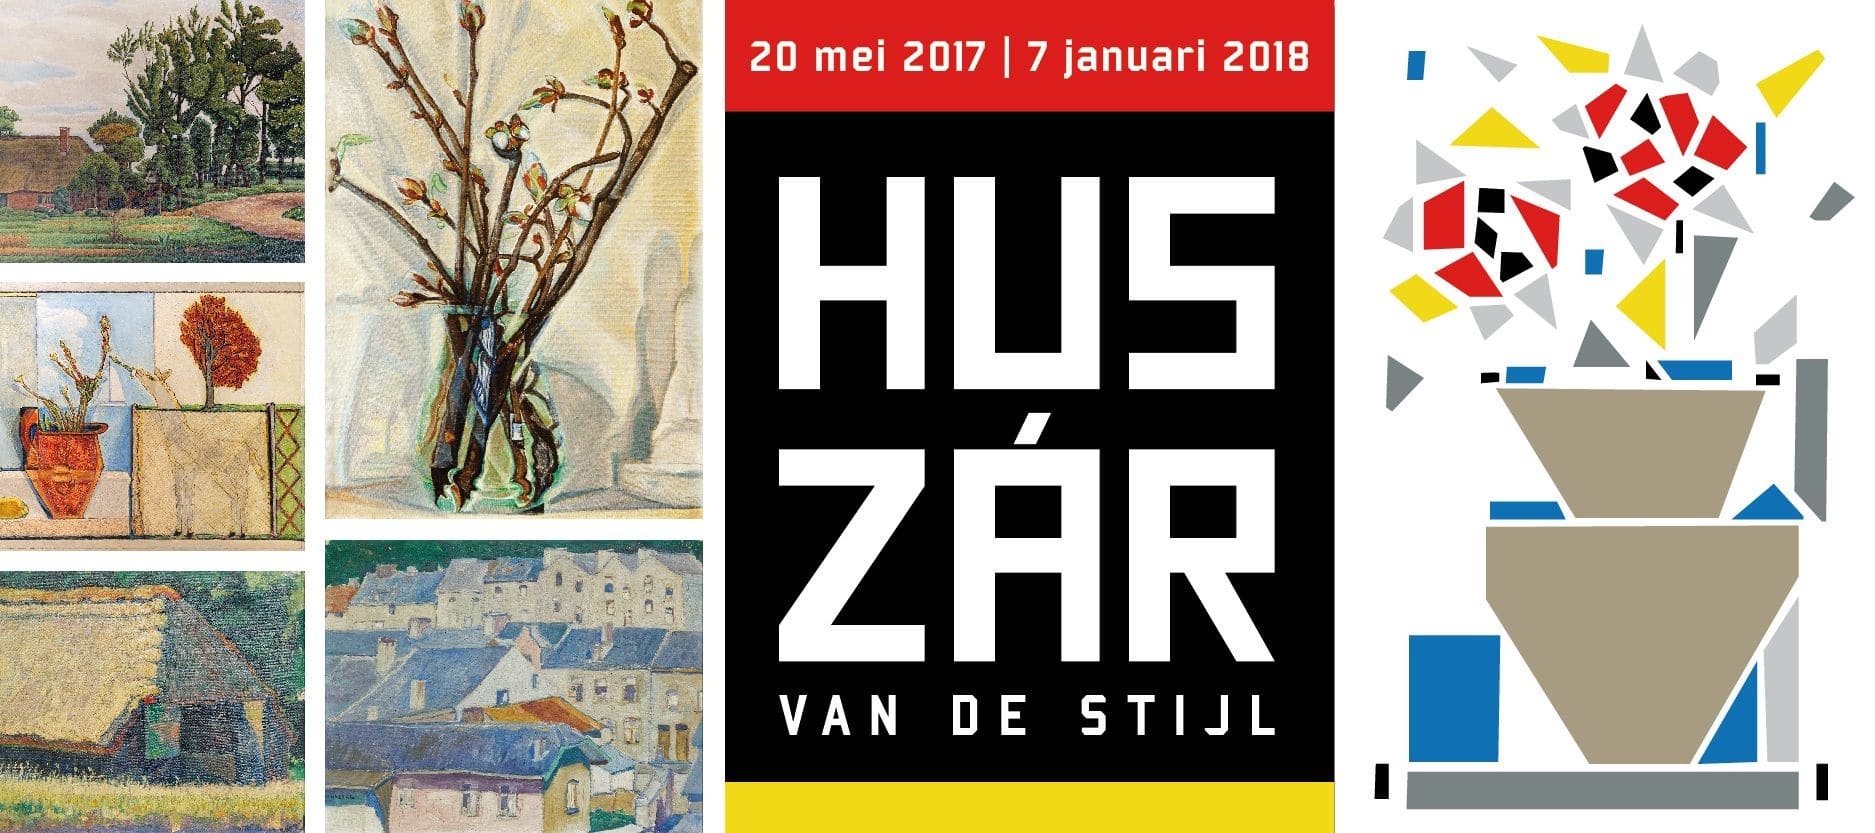 IMG 0003 - Huszár van De Stijl-tentoonstelling Vilmos Huszár in het Stadsmuseum Harderwijk